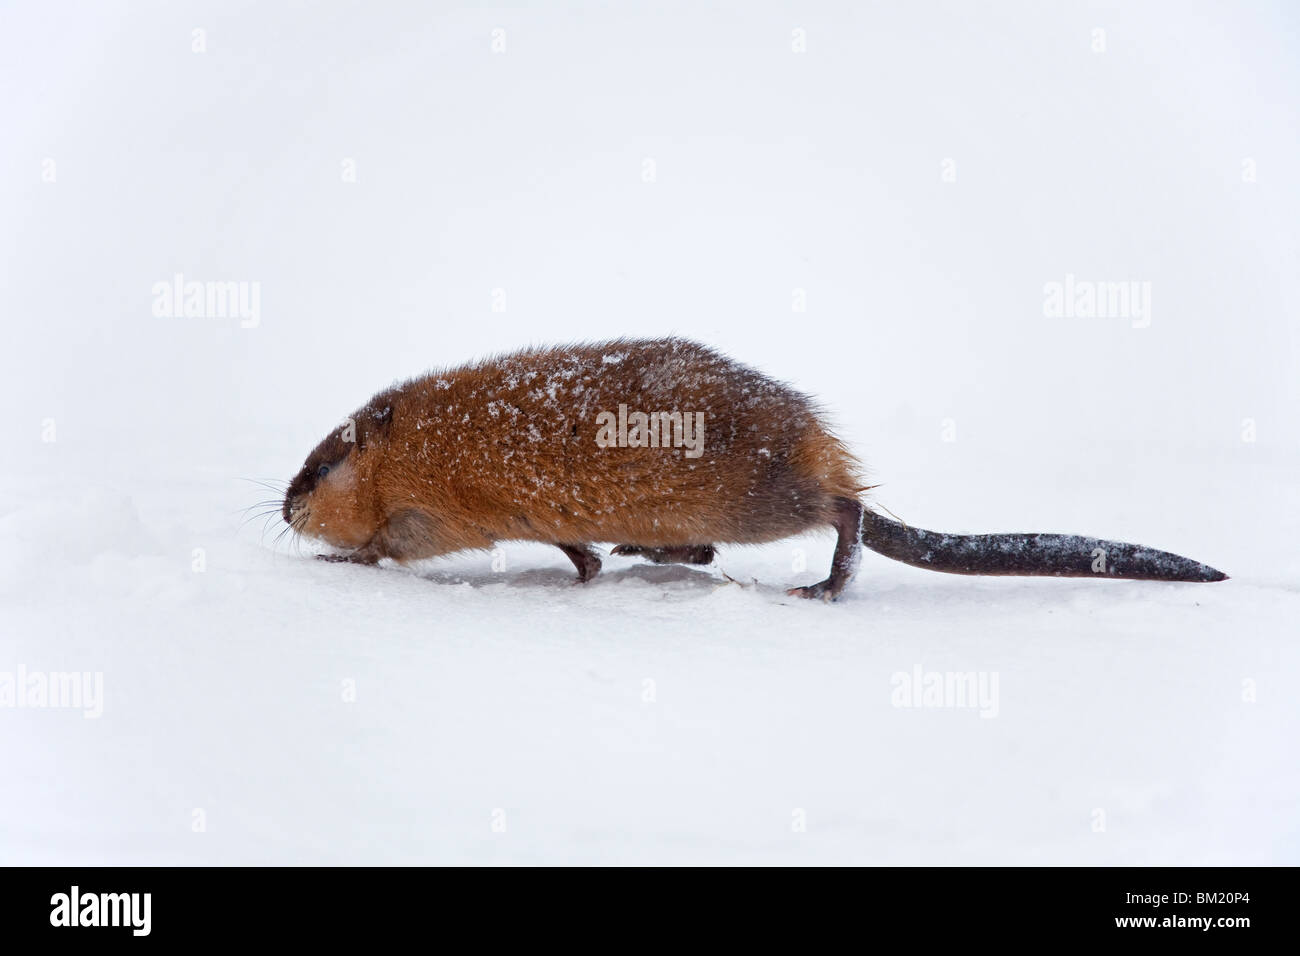 Muskrat (Ondatra zibethicus) running in the snow in winter Stock Photo